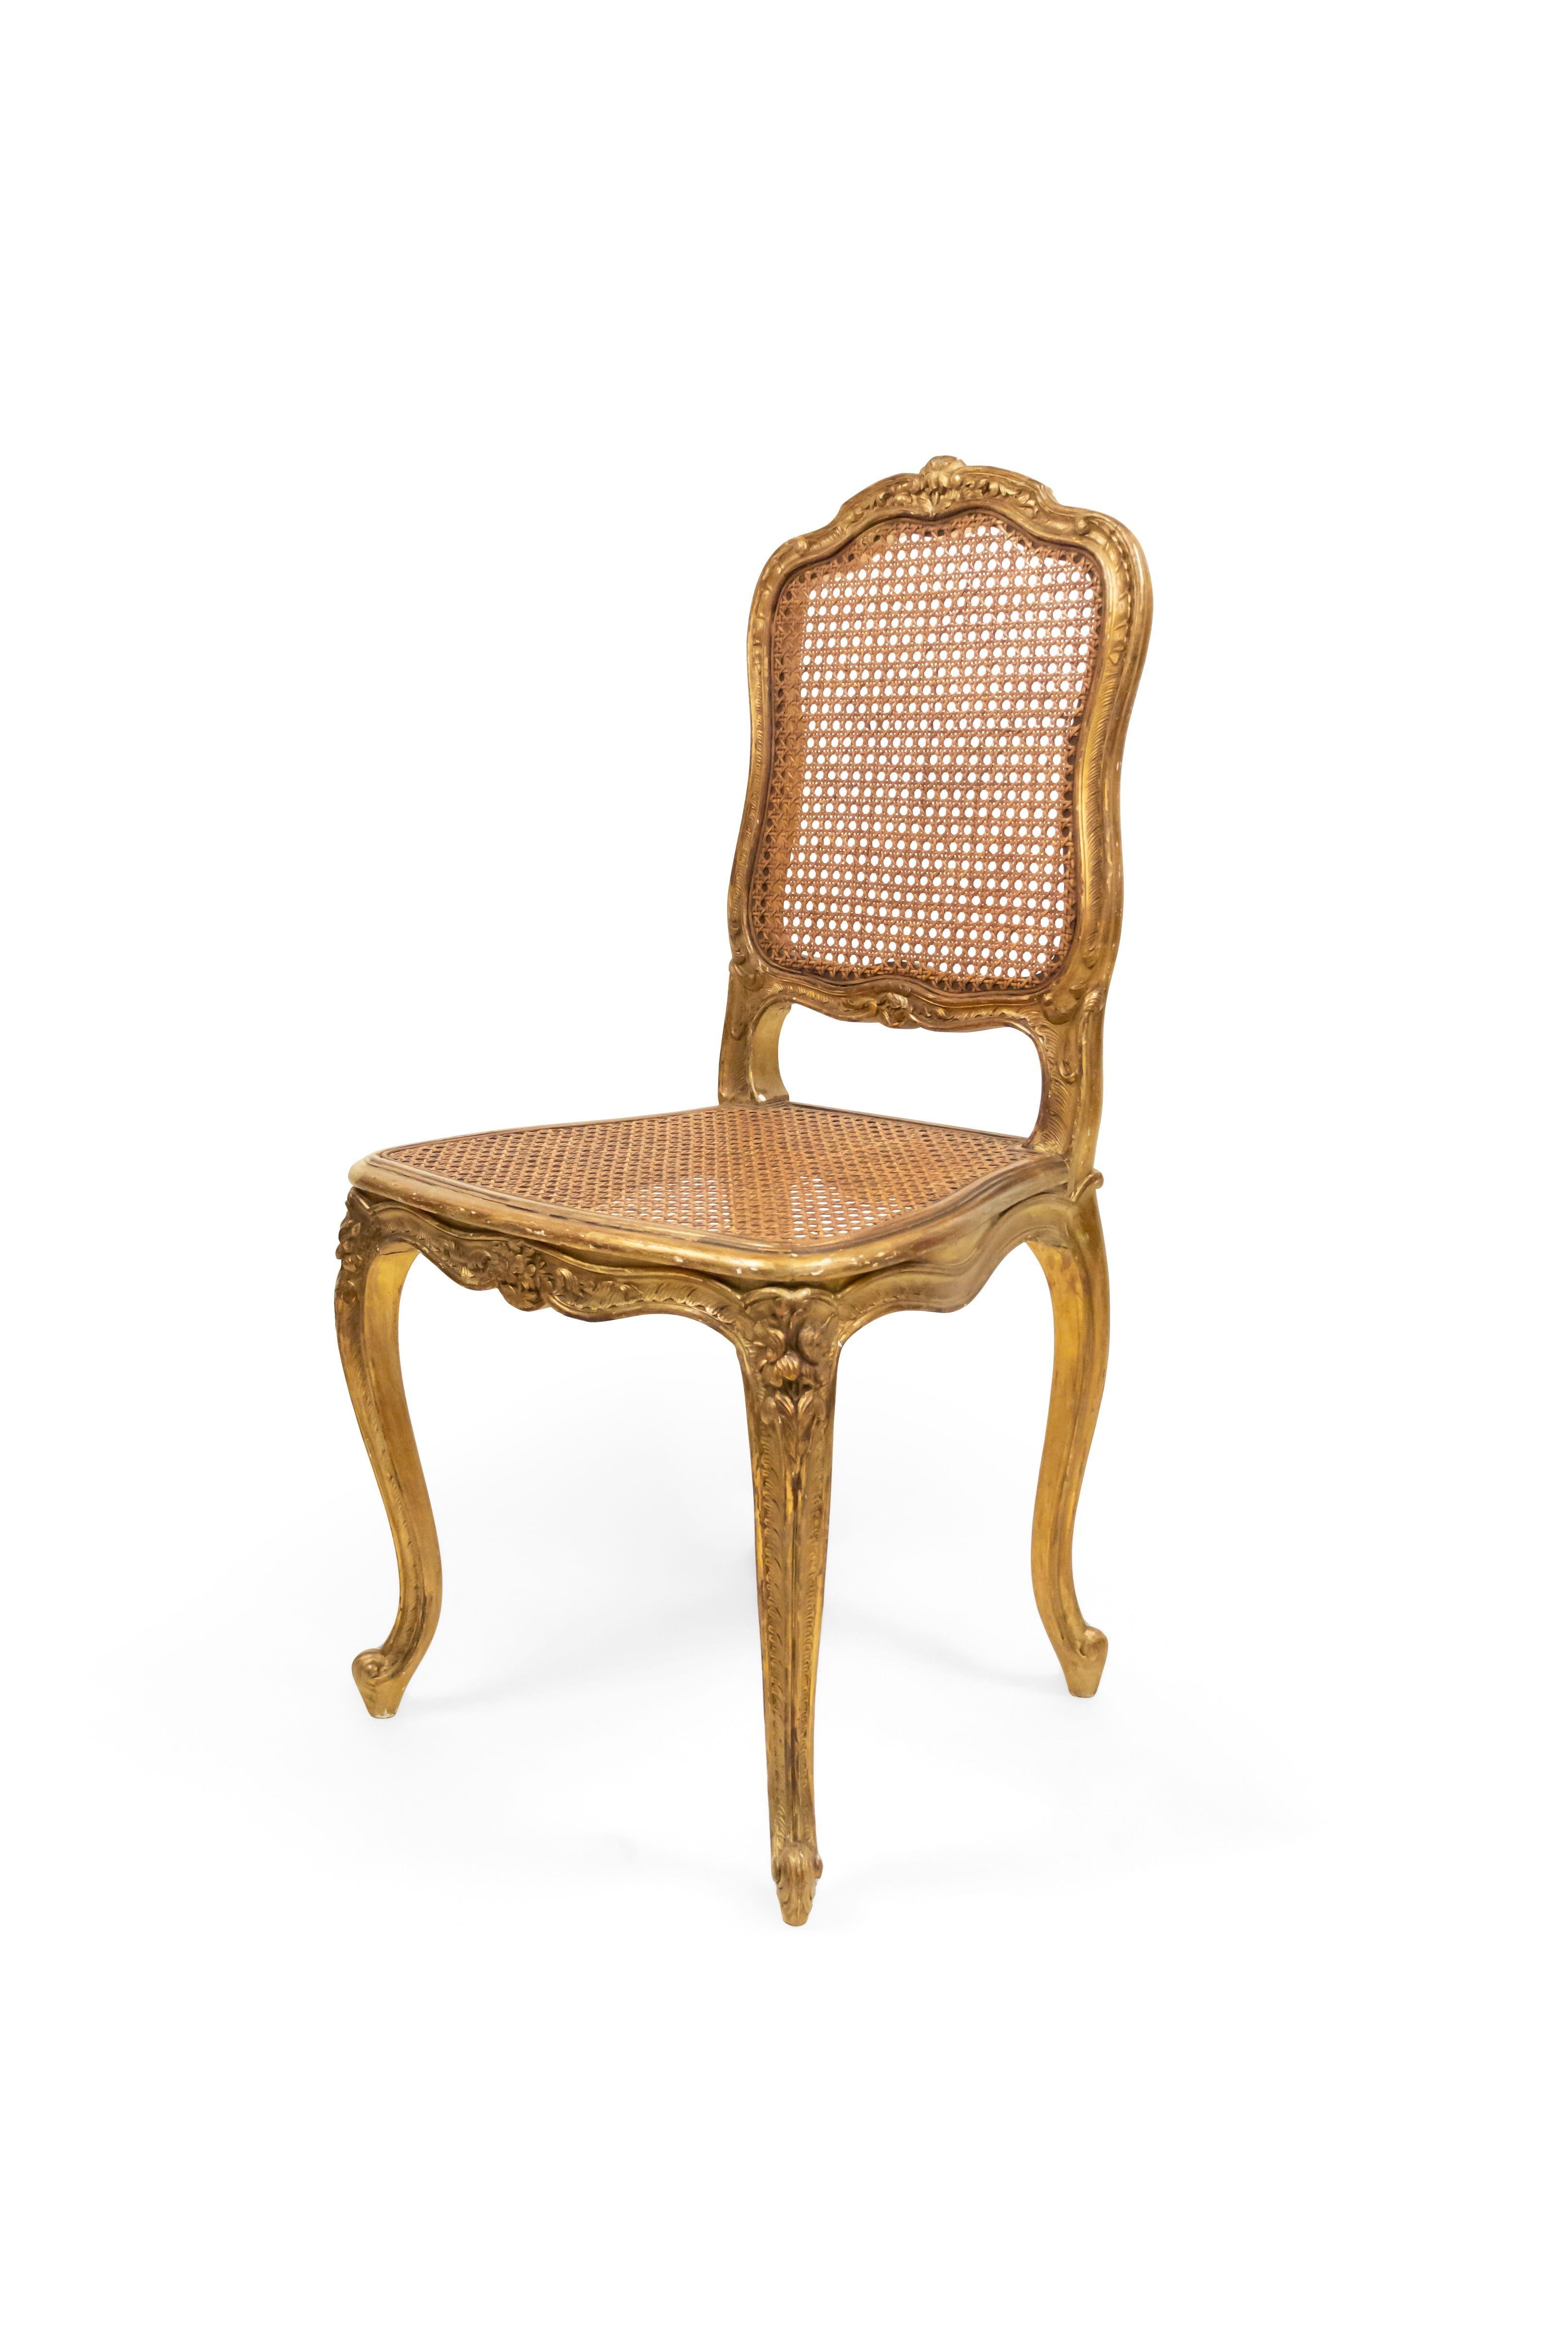 Satz von 8 vergoldeten Beistellstühlen im französischen Louis XV-Stil (19. Jahrhundert) mit Rohrsitzen.